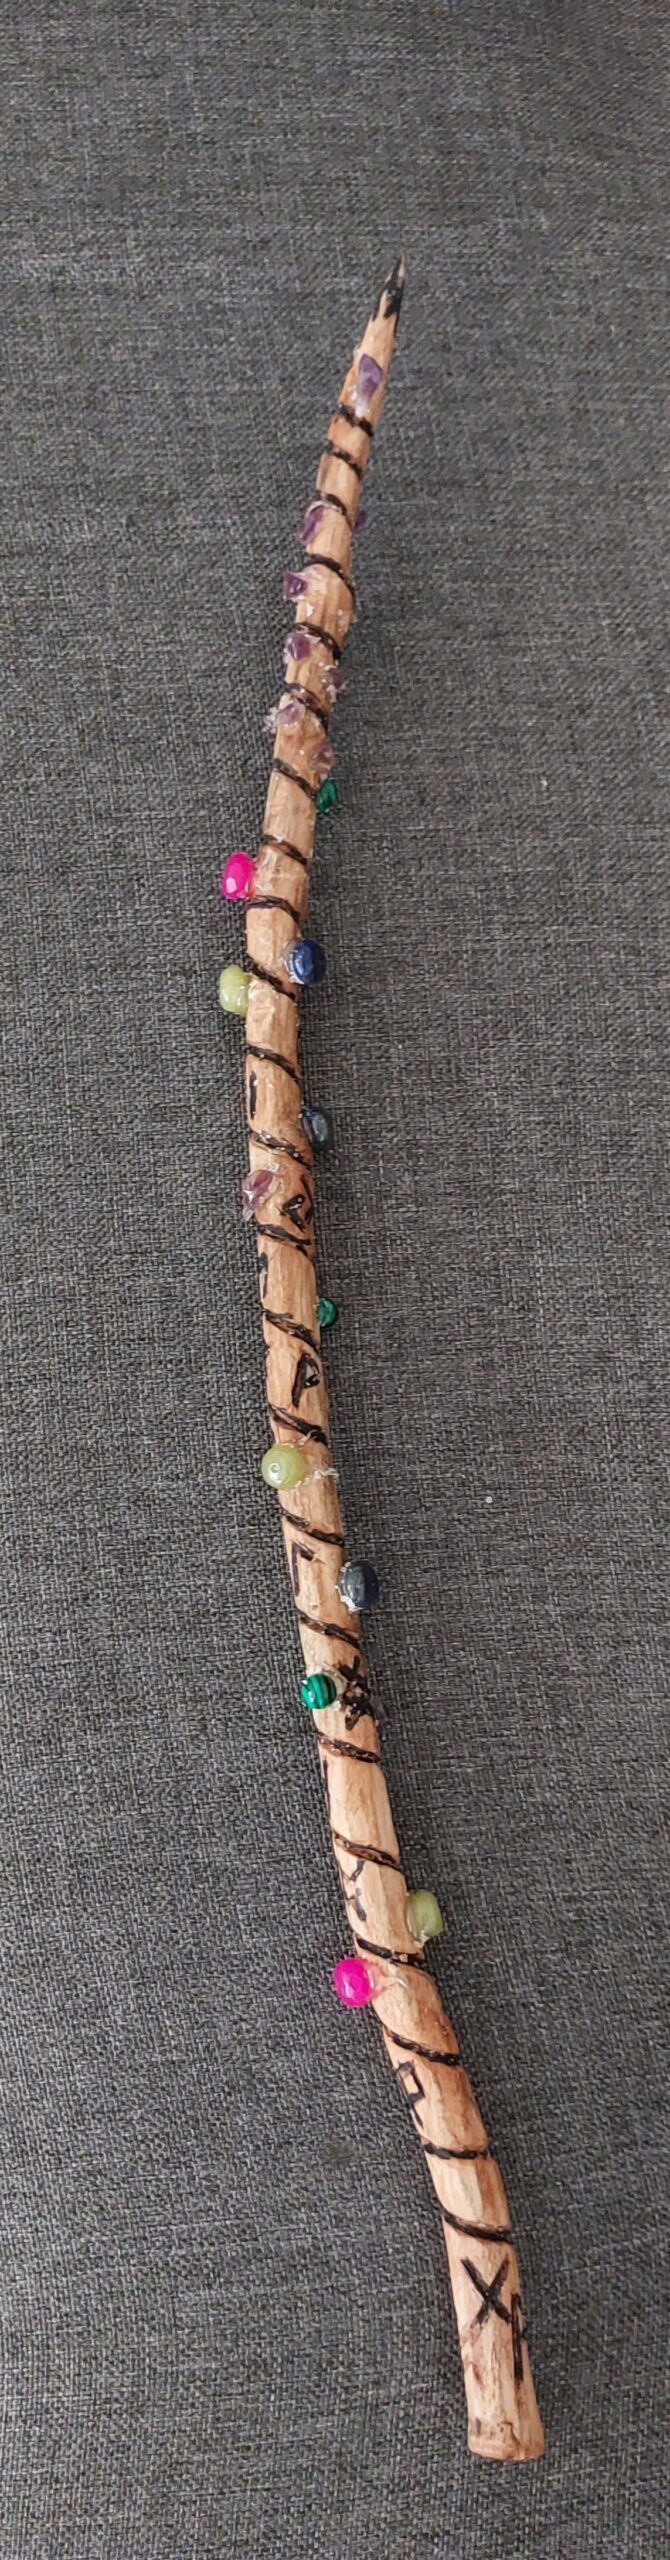 Bild eines aus Holz geschnitzten Zauberstabes mit eingeschnitzten Runen und angebrachten Halbedelsteinen